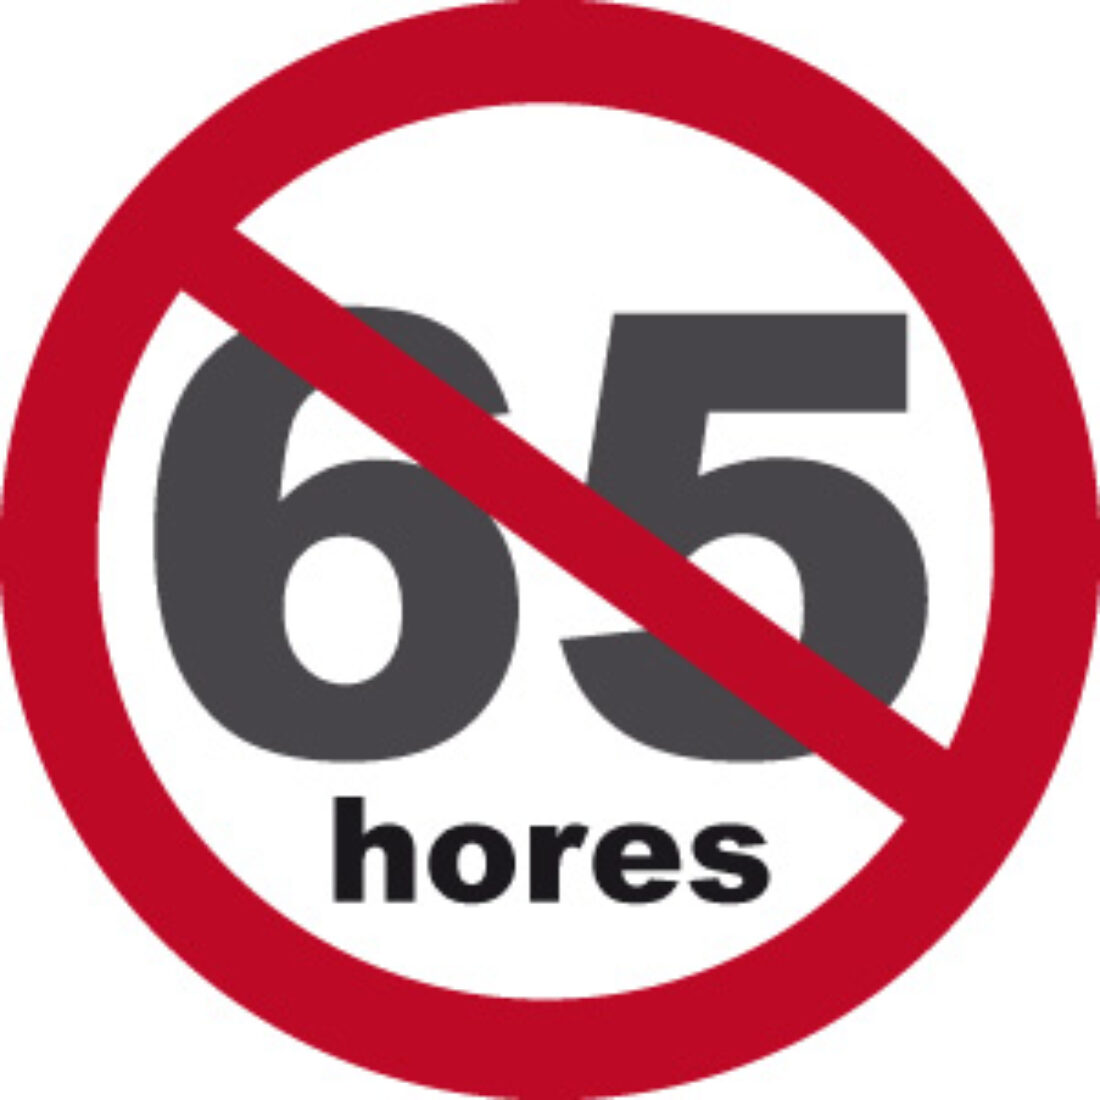 Mobilitzacions i jornada d’aturades el dimarts 7 d’octubre contra la Directiva europea de la setmana laboral de fins a 65 hores